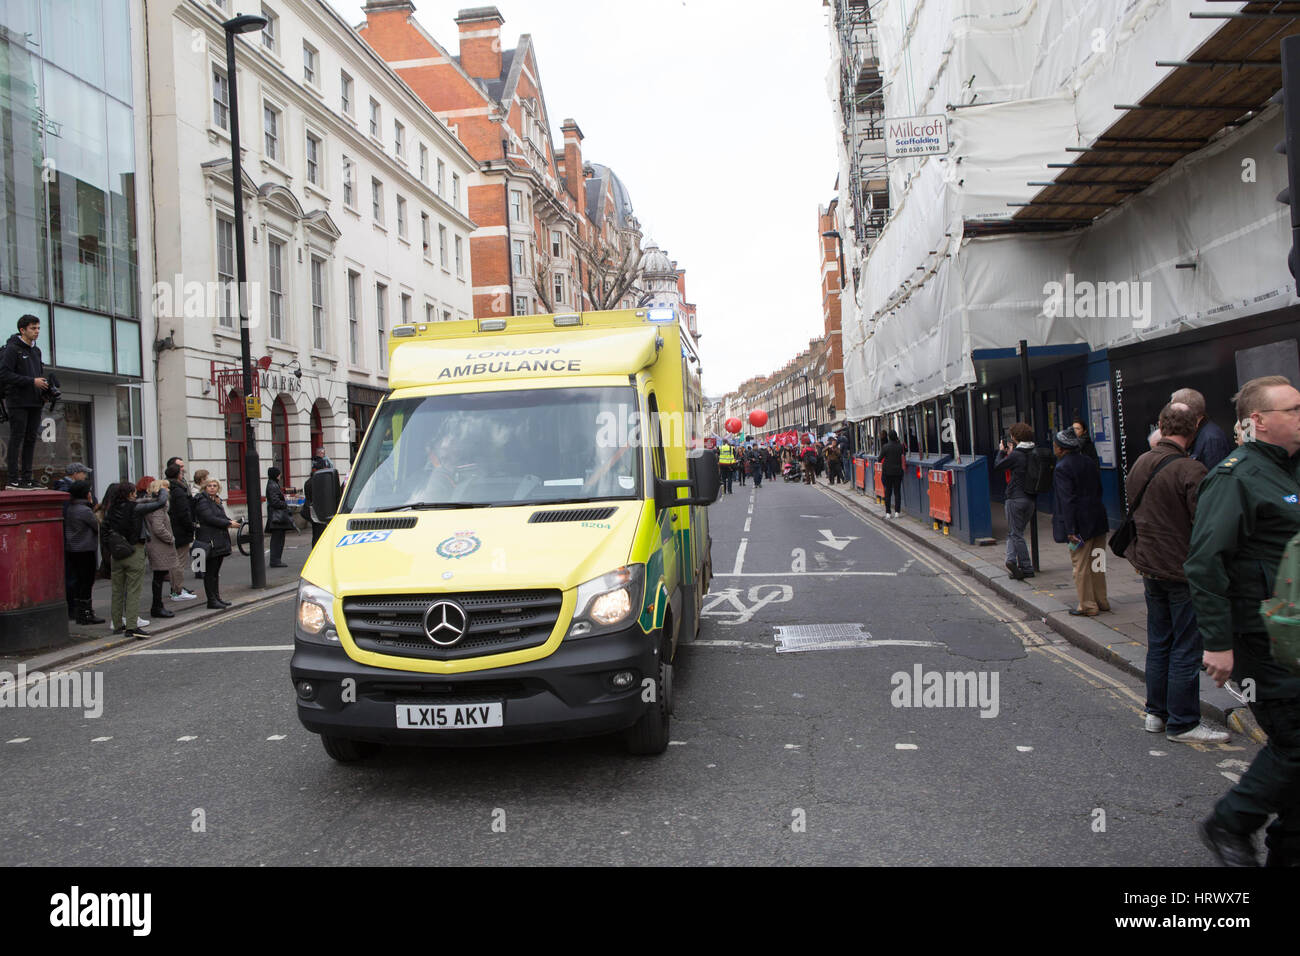 London, UK. 4. März 2017. Nationale Demonstration des NHS einen Krankenwagen zu verteidigen ab März in der Nähe von Oxford Street Neukredite vorne herausziehen: Brian Southam/Alamy Live News Stockfoto